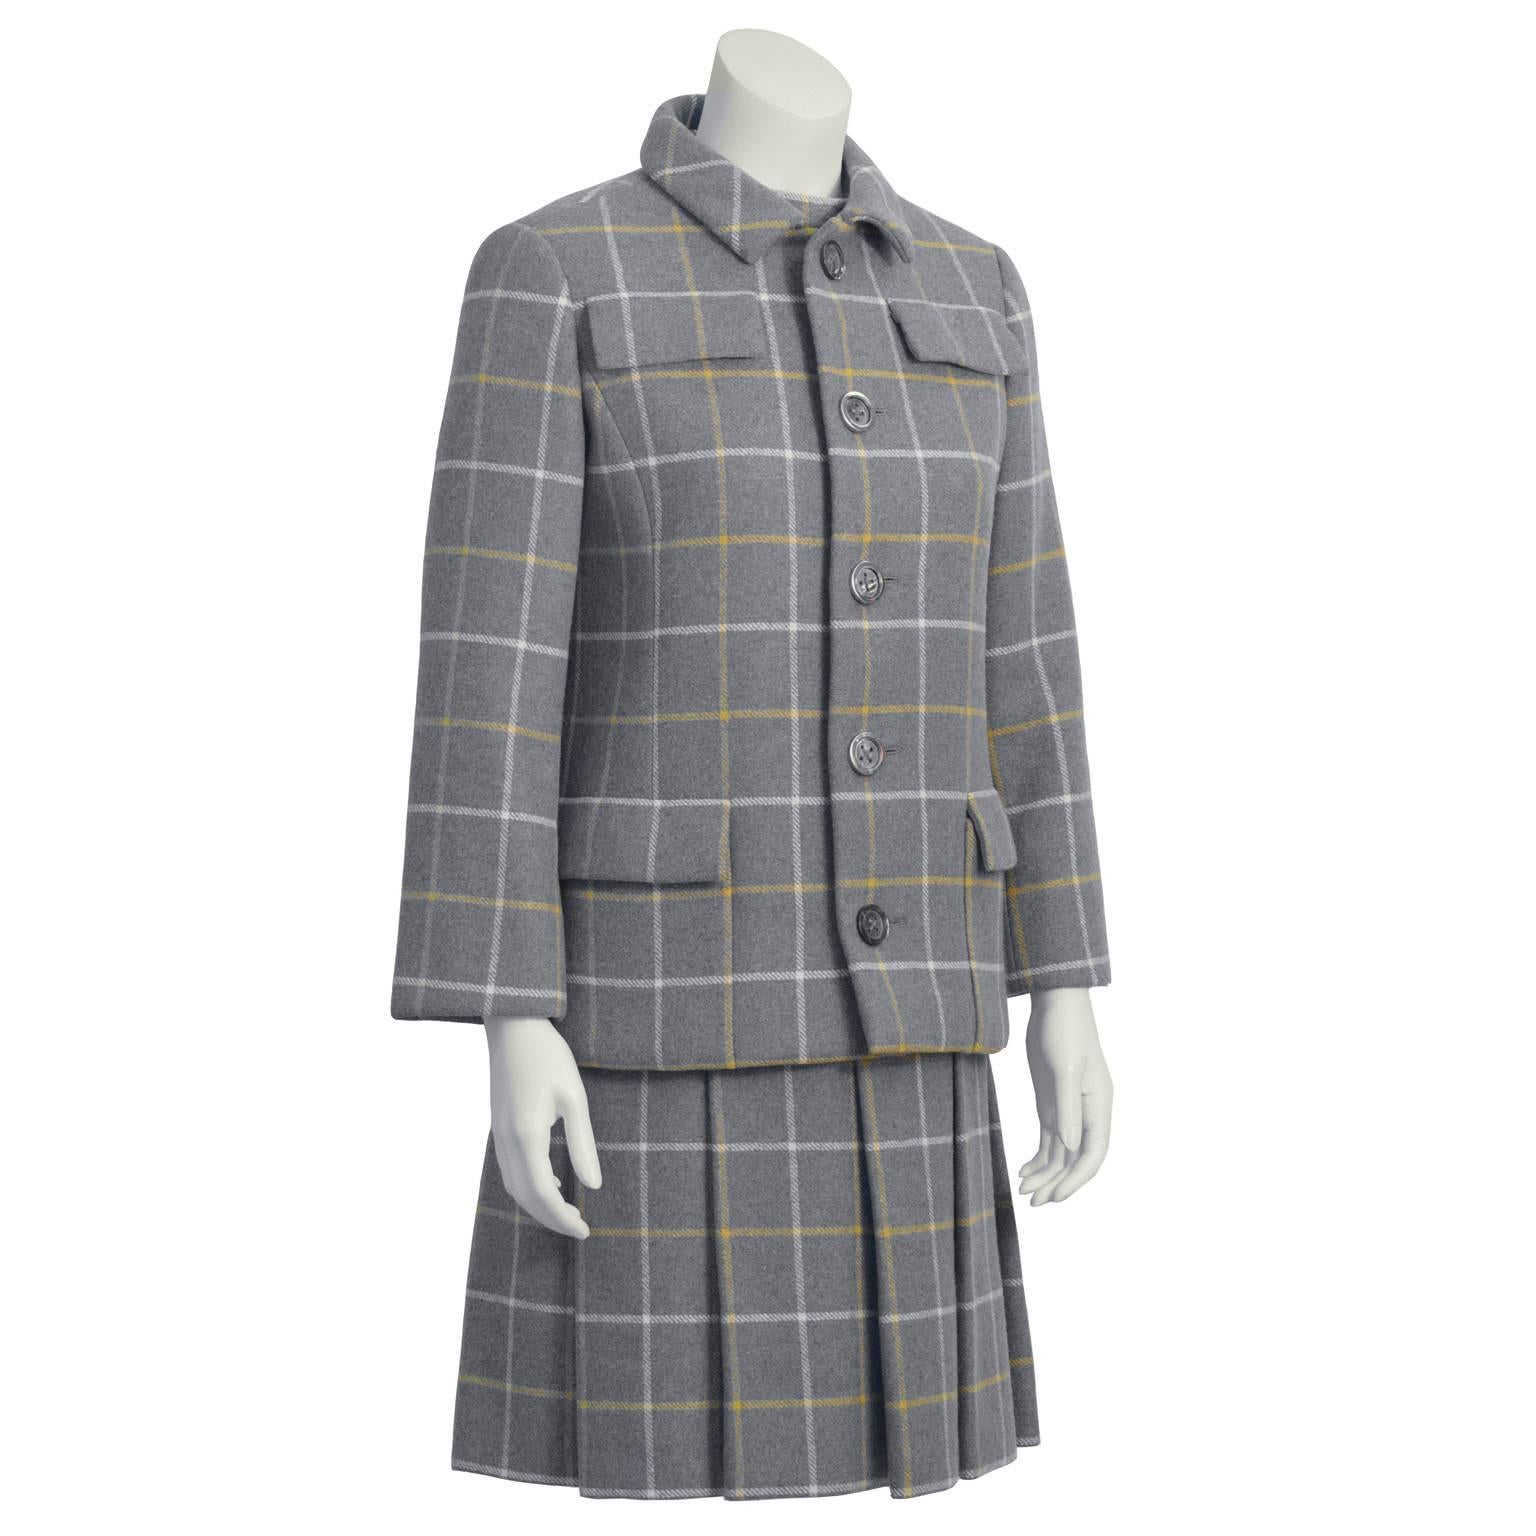 Schickes Kleid und Jacke aus grauer Windowpane-Wolle aus den 1960er Jahren. Das ärmellose Kleid hat einen Rundhalsausschnitt mit zwei vertikalen Schlitztaschen in der Taille und einen Rock mit Kellerfalten in der Taille. Die Jacke hat Pattentaschen